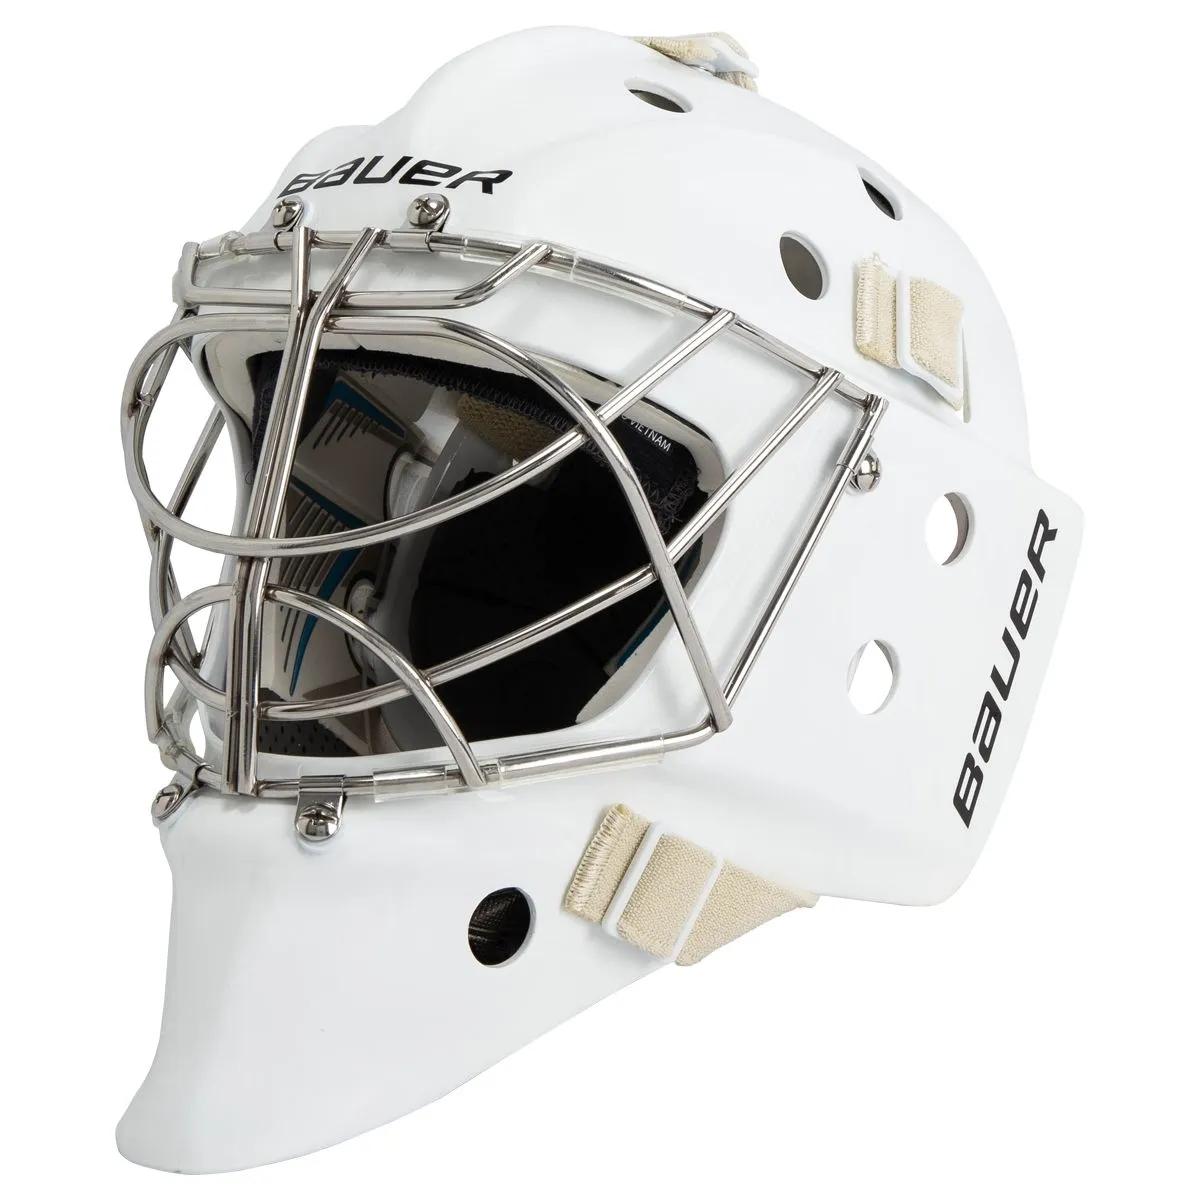 Bauer 950 Goalie Mask - White